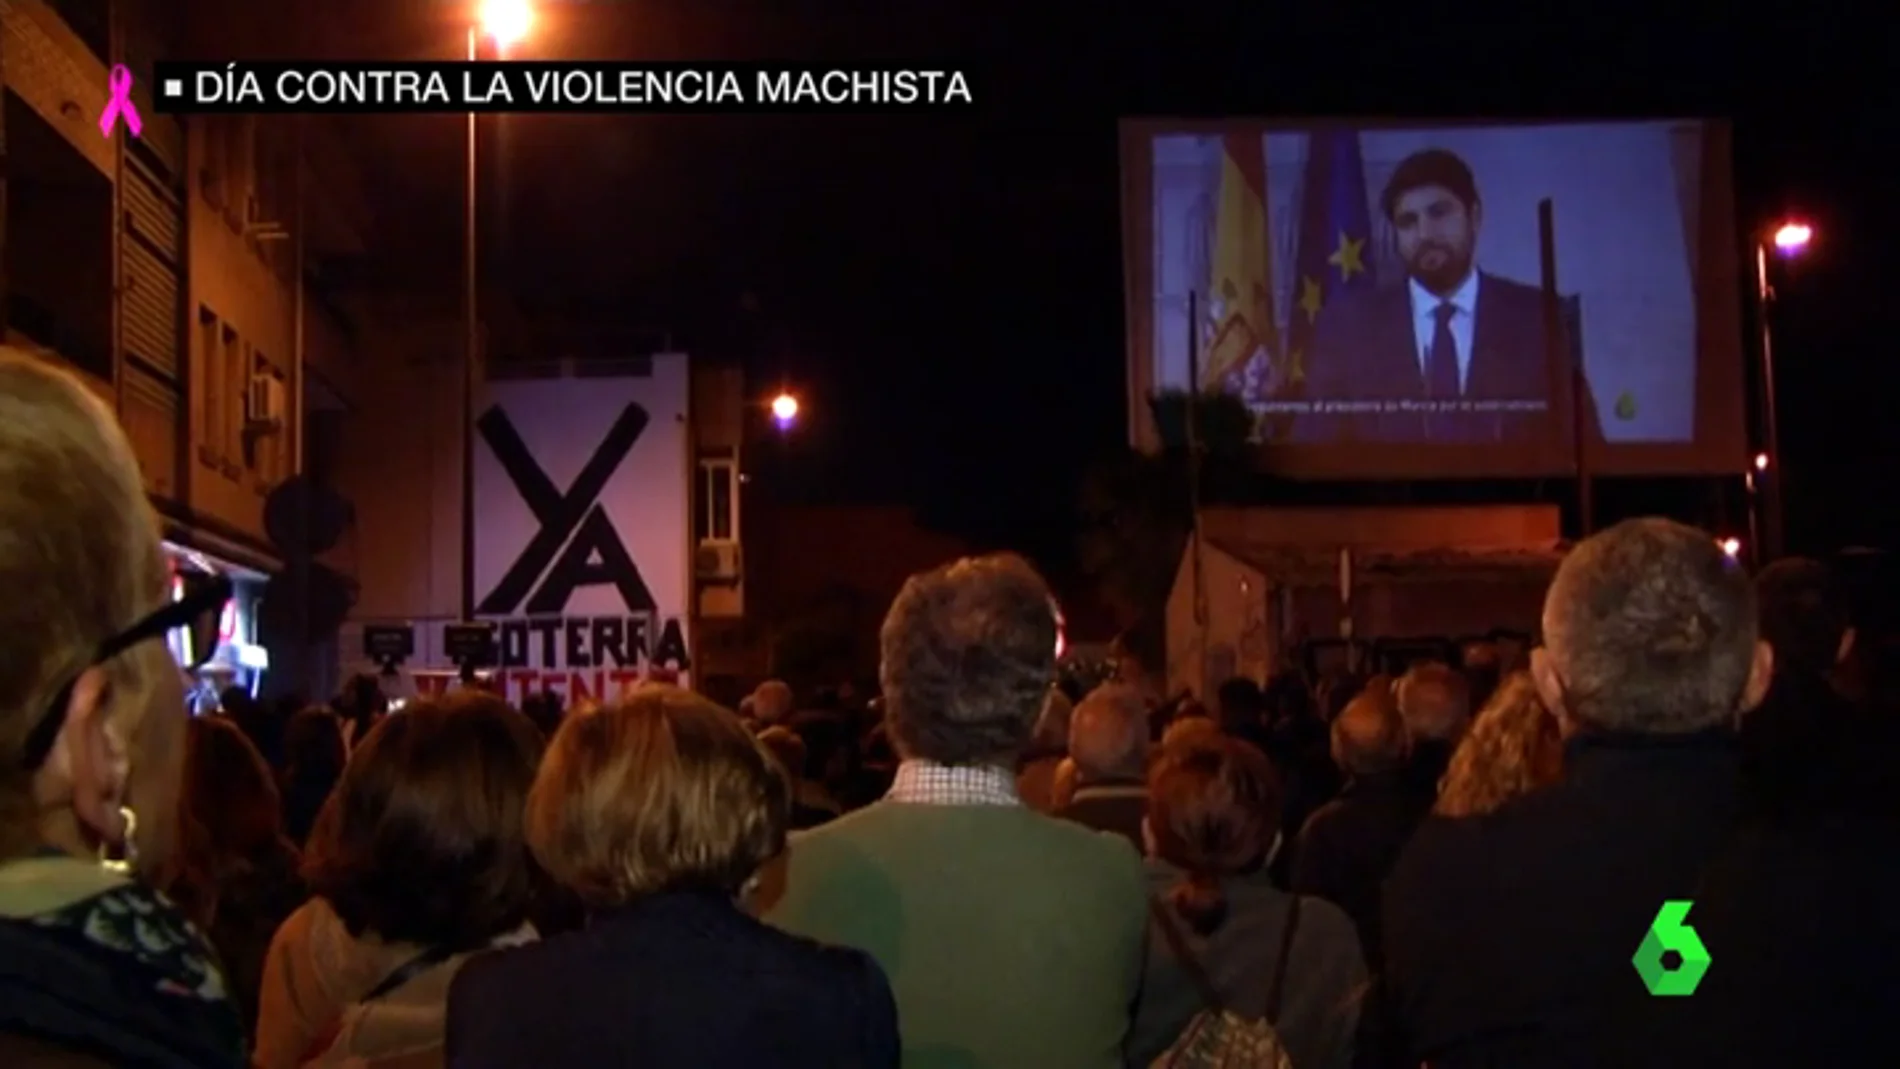 Los vecinos de Murcia siguen en su lucha: así fue su noche número 74 viendo en pantalla gigante laSexta Columna